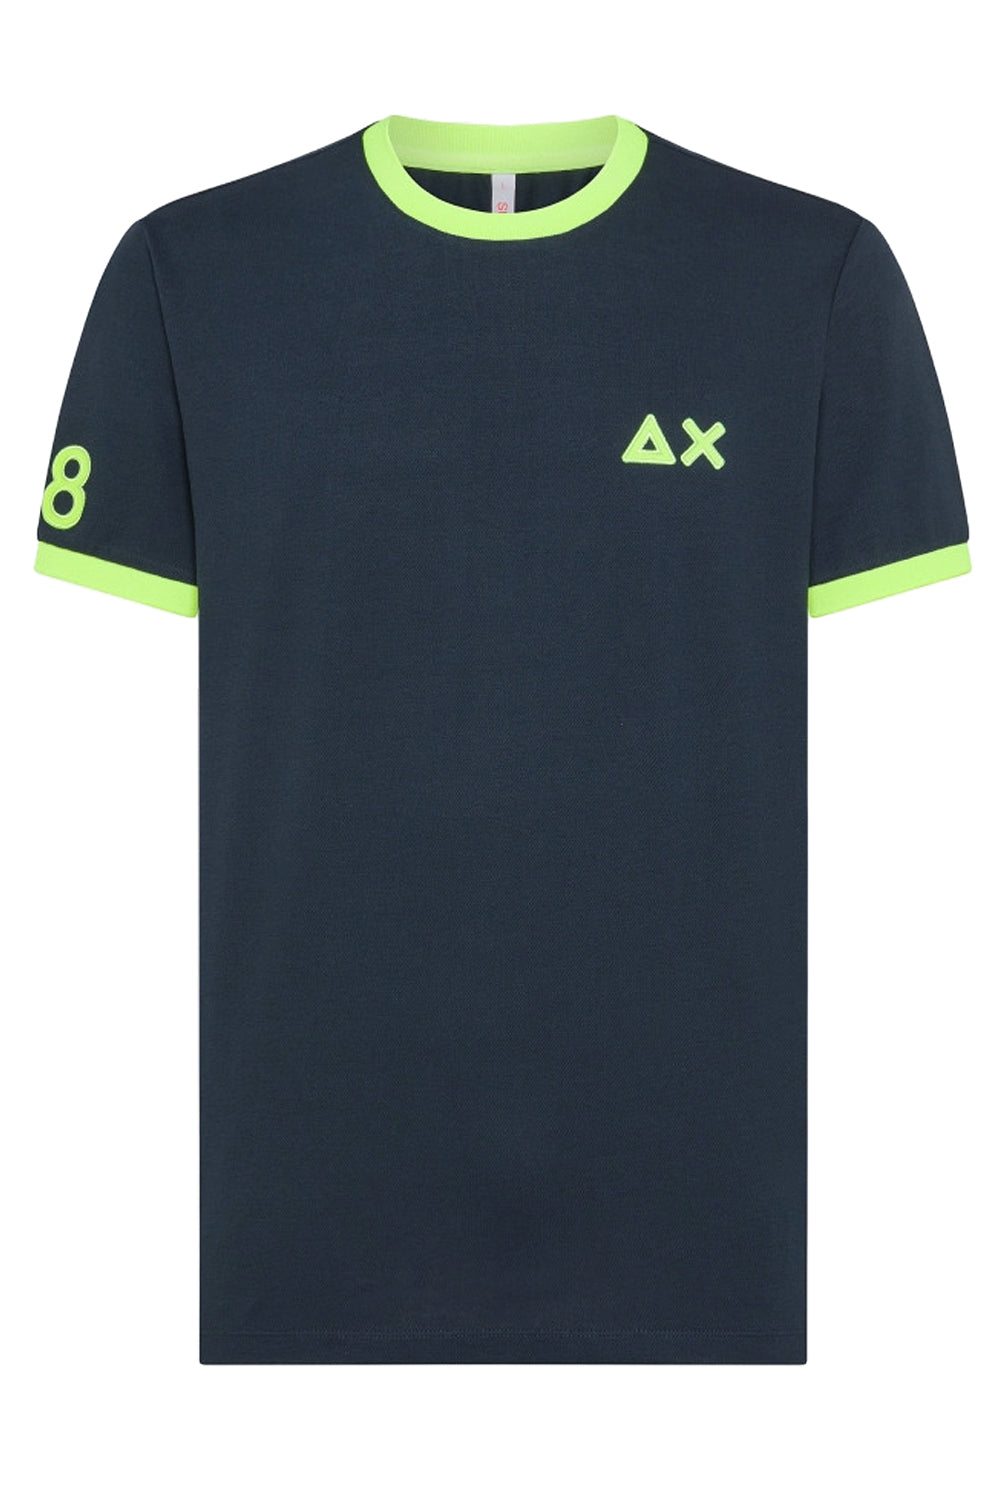 Image of SUN 68 T-shirt con logo fluo